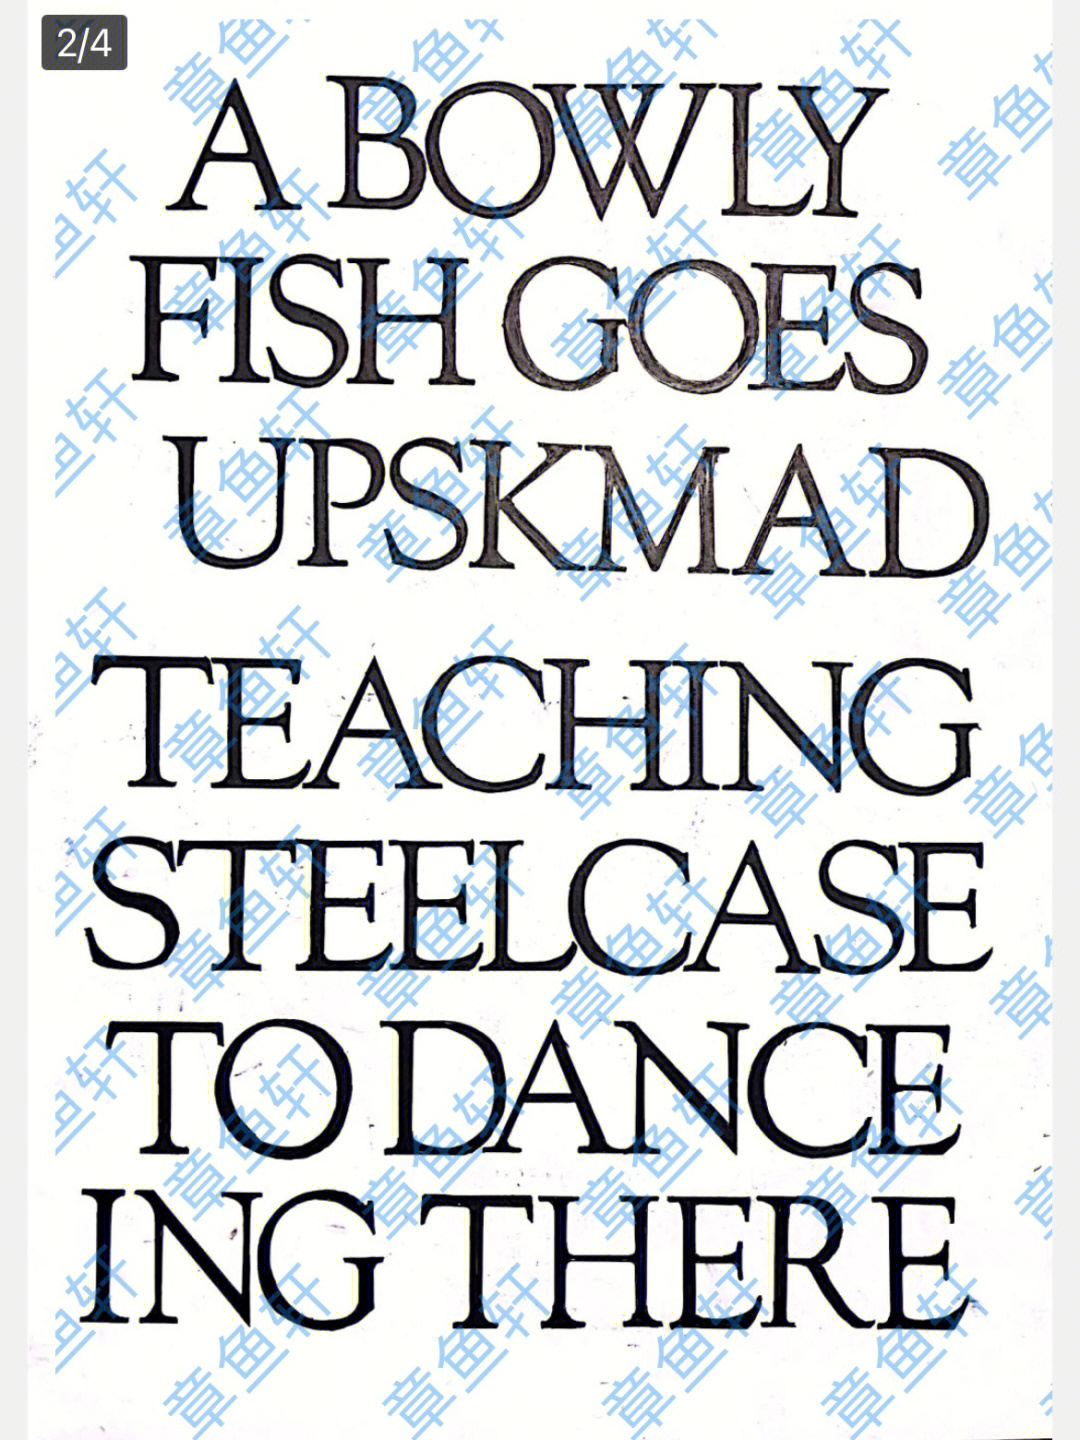 zebra fish字体设计图片